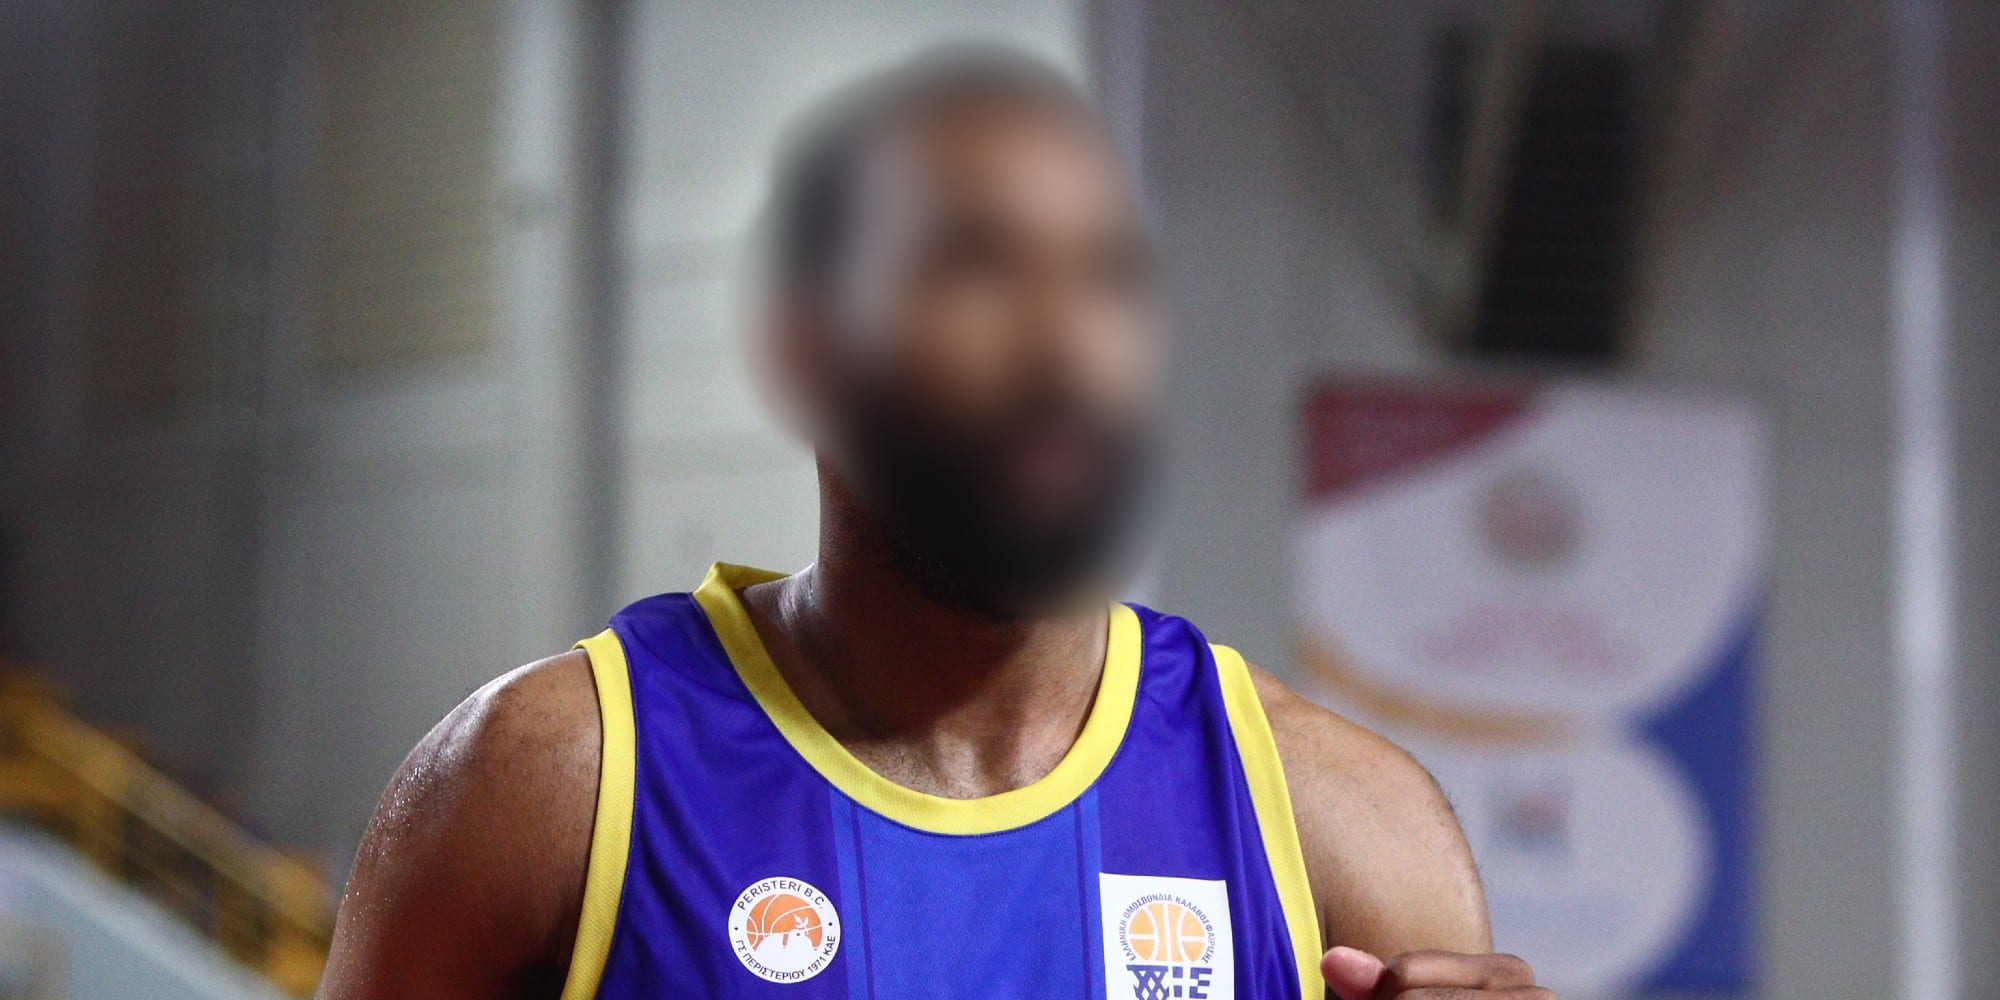 Ο μπασκετμπολίστας του Περιστερίου που κατηγορείται για ενδοοικογενειακή βία